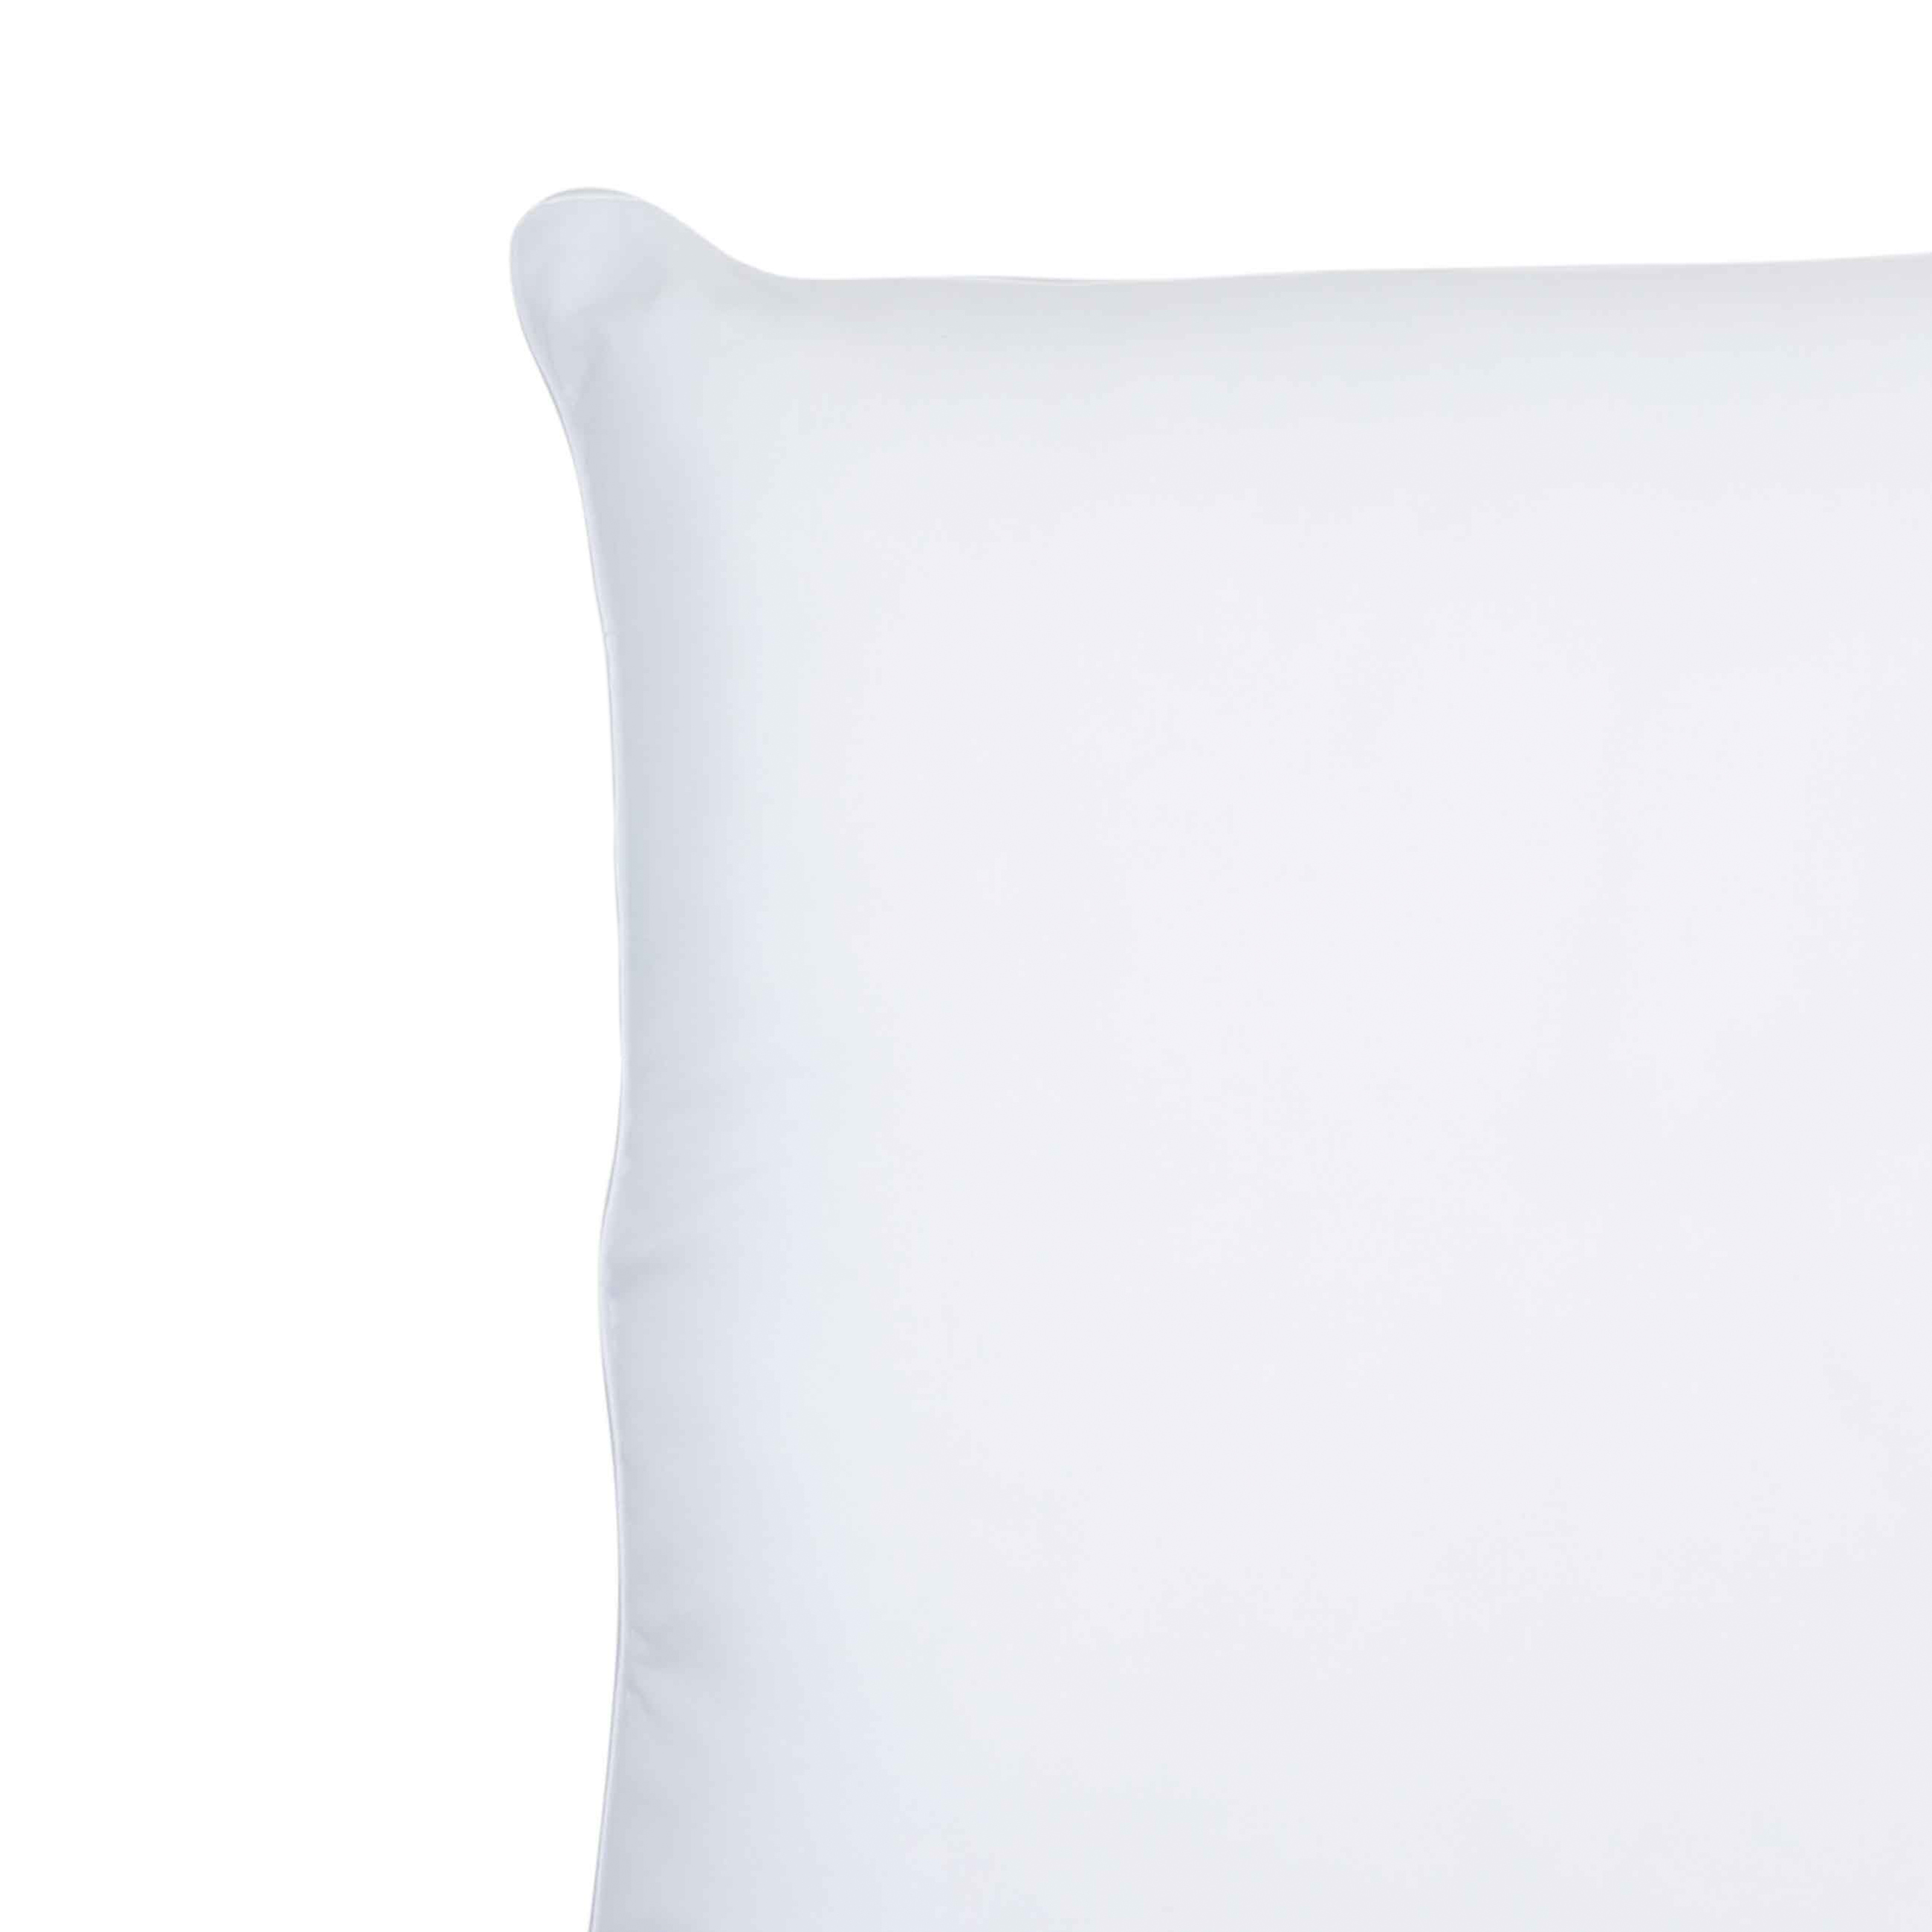 Pillow, 50x70 cm, cotton / microfiber, Soft cotton изображение № 2